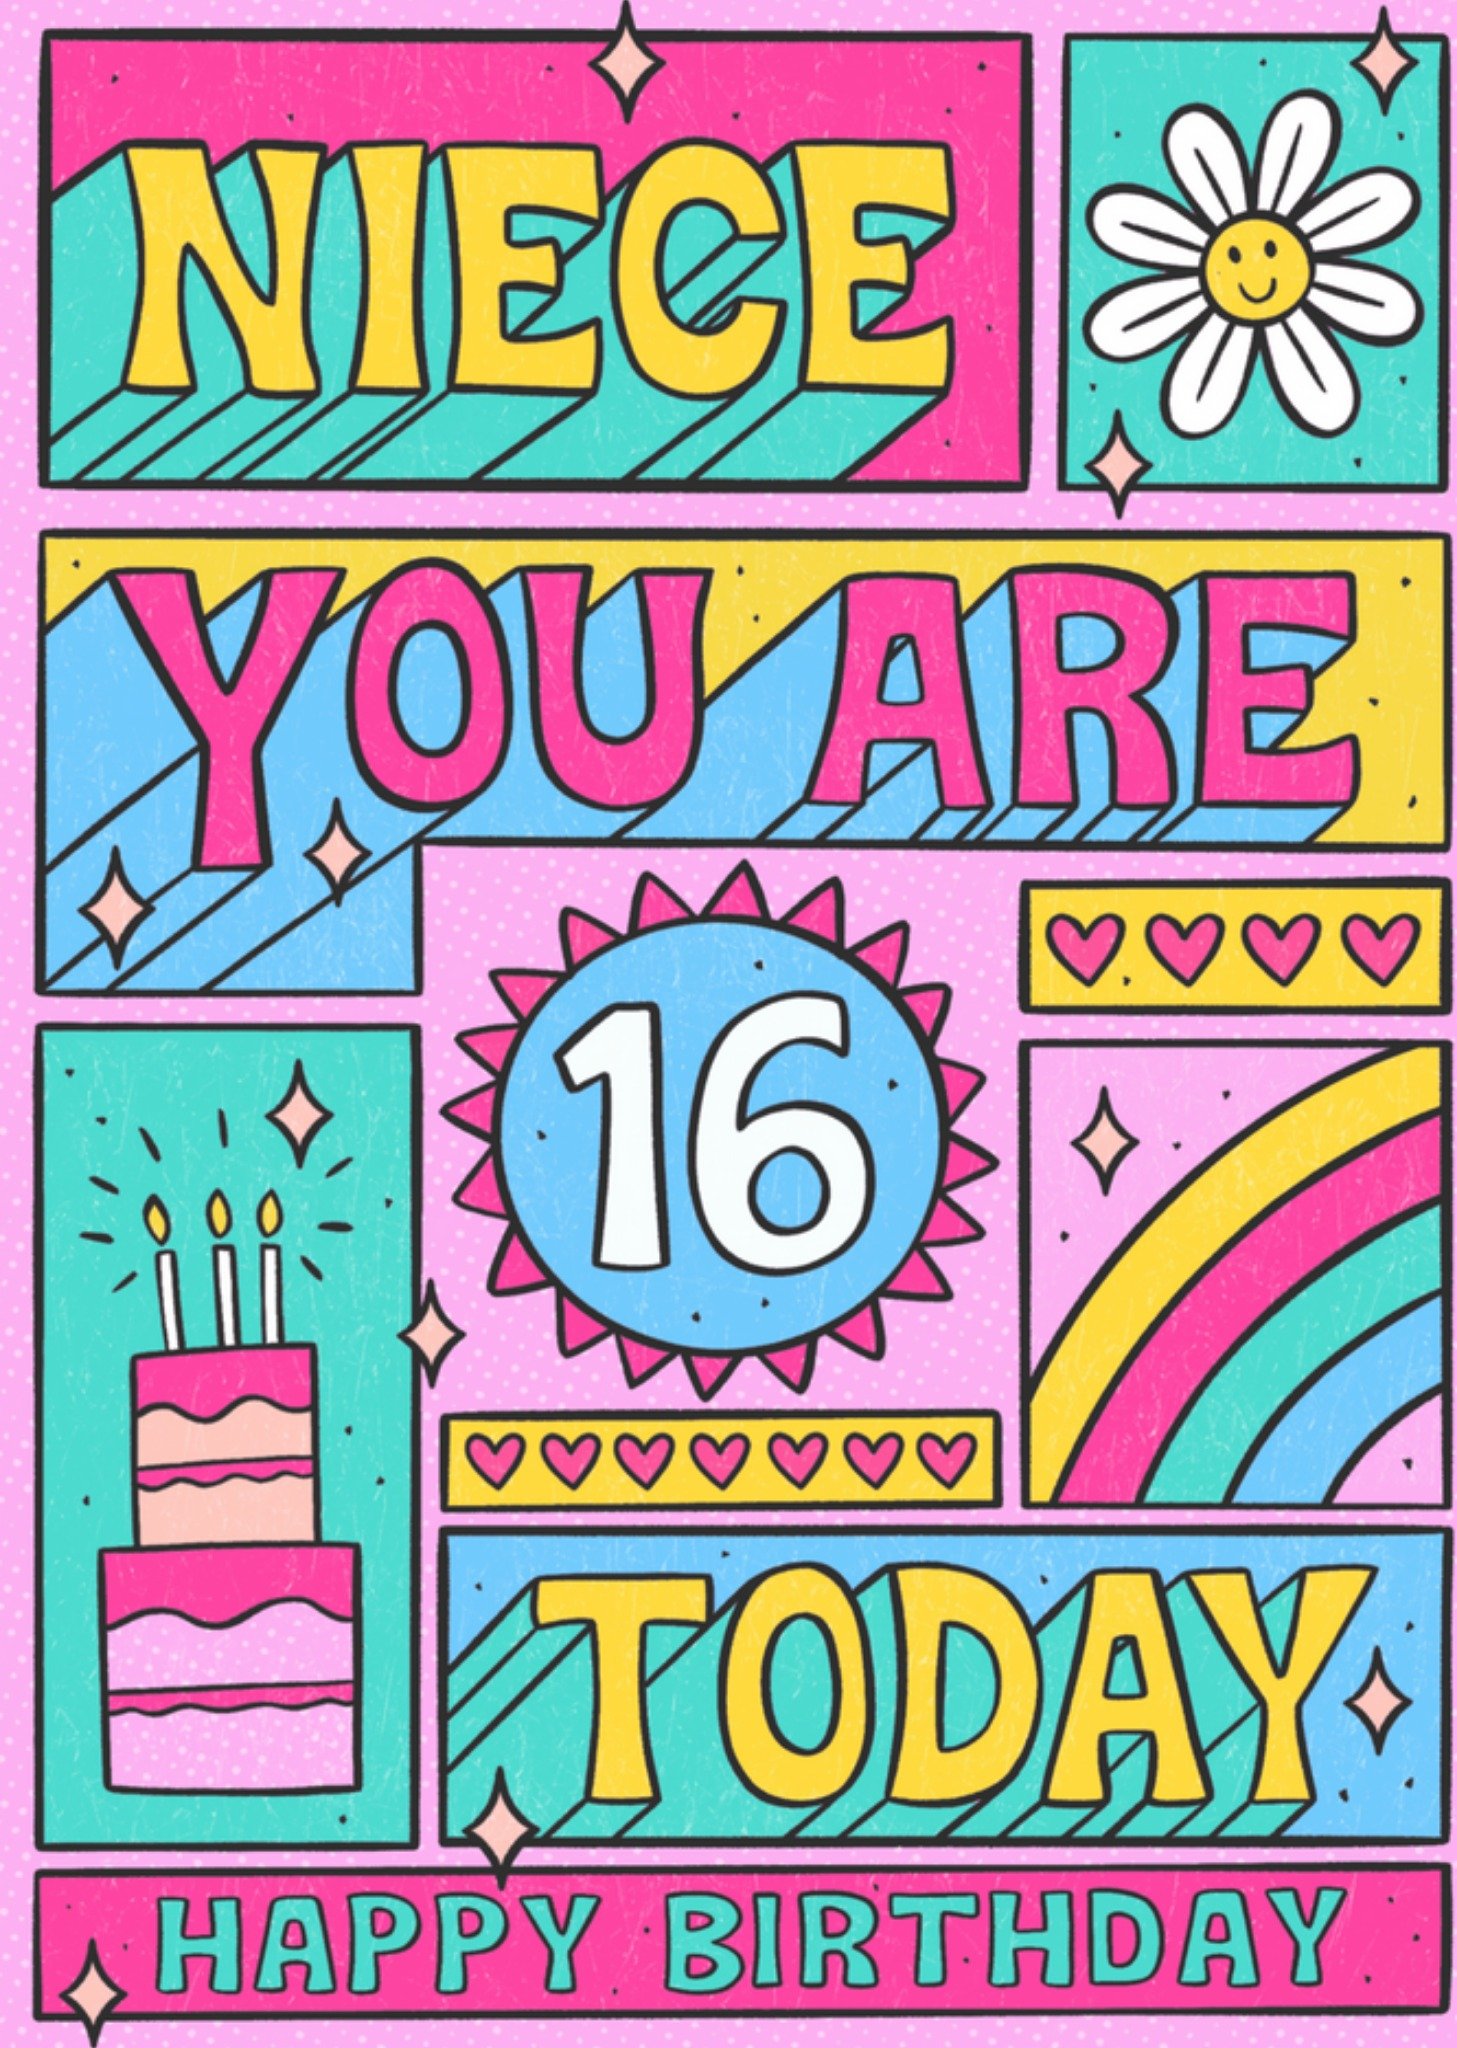 Verjaardagskaart - Niece you are 16